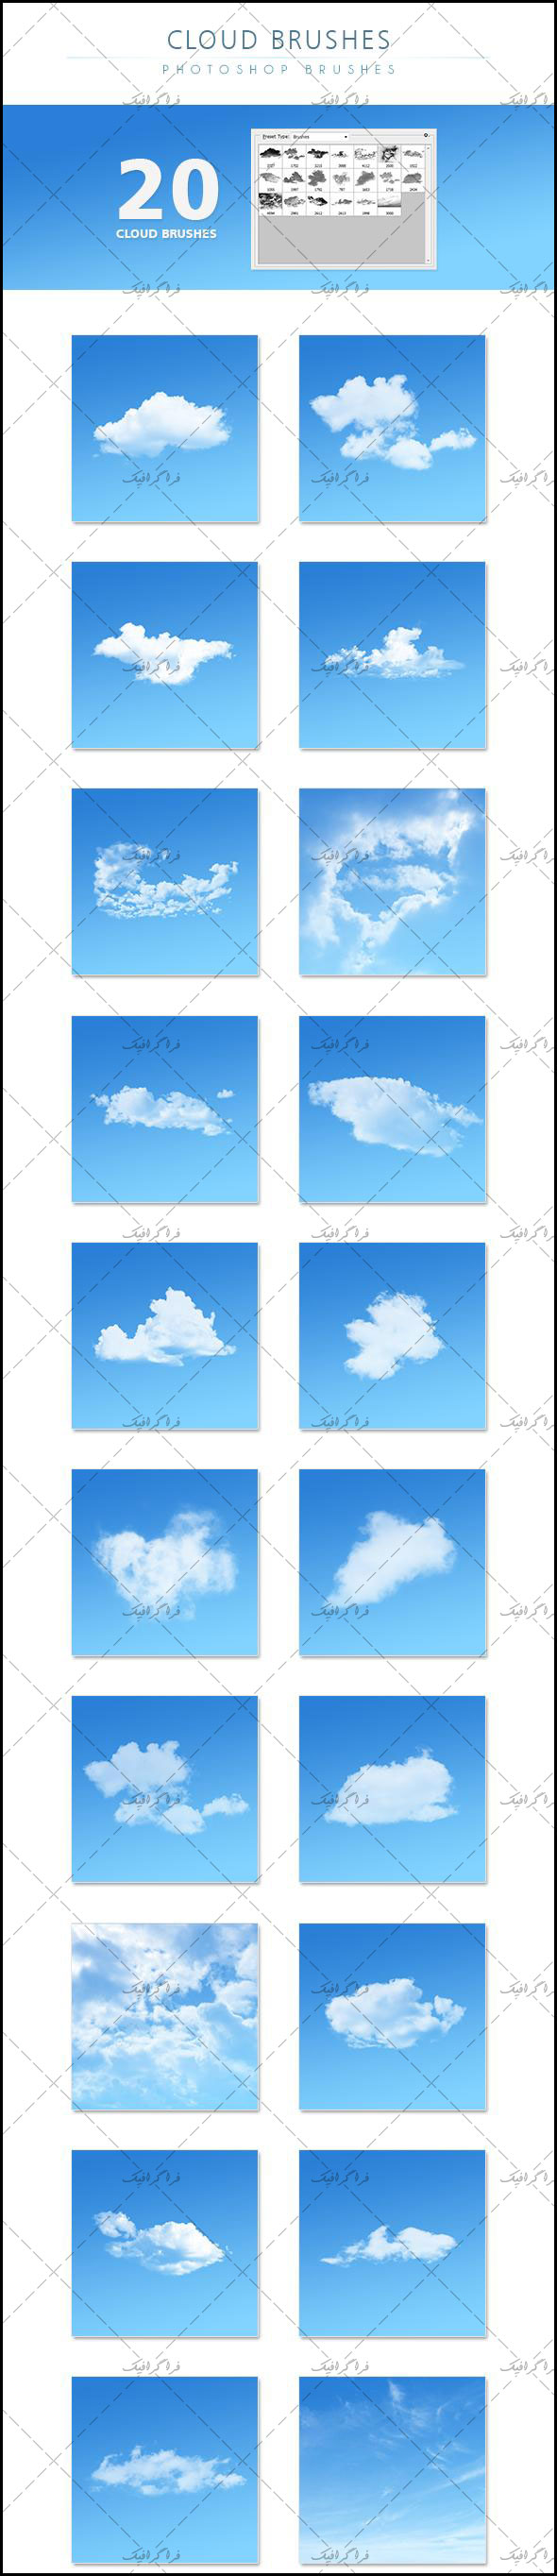 دانلود براش های فتوشاپ ابر Clouds Brushes - شماره 6